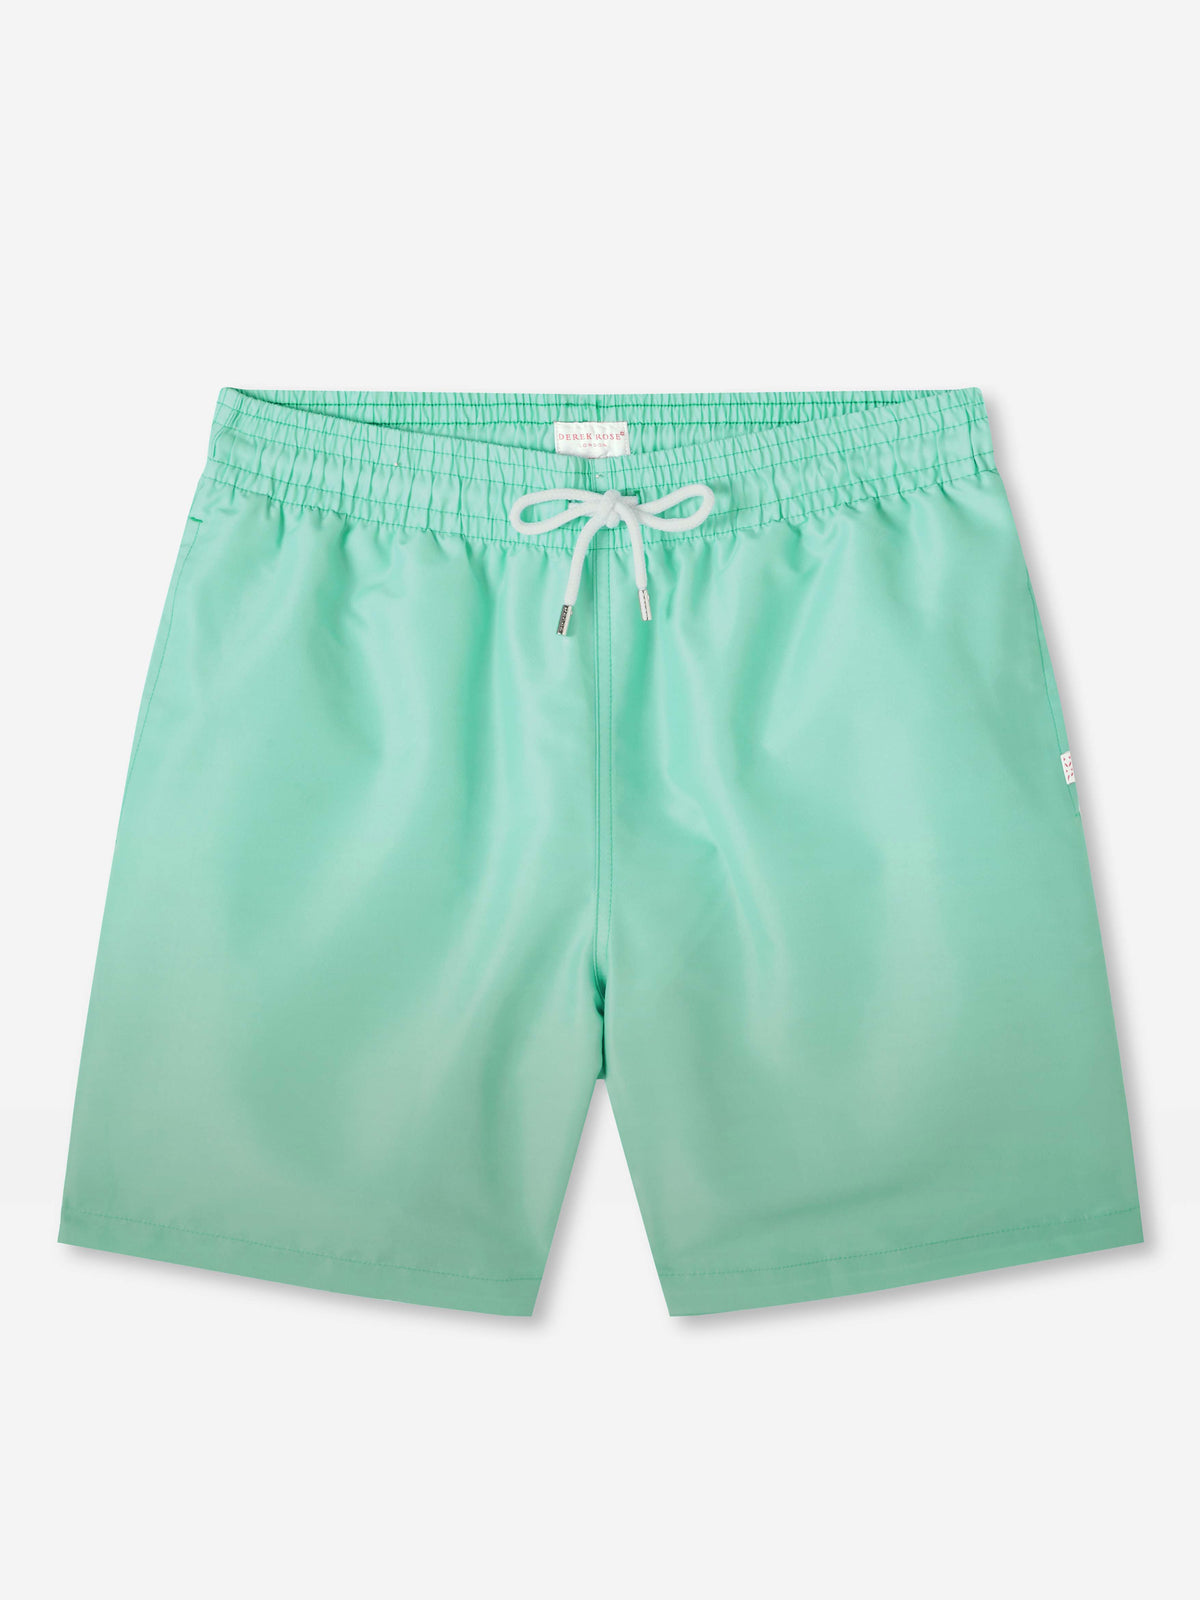 Men's Swim Shorts Maui 50 Mint